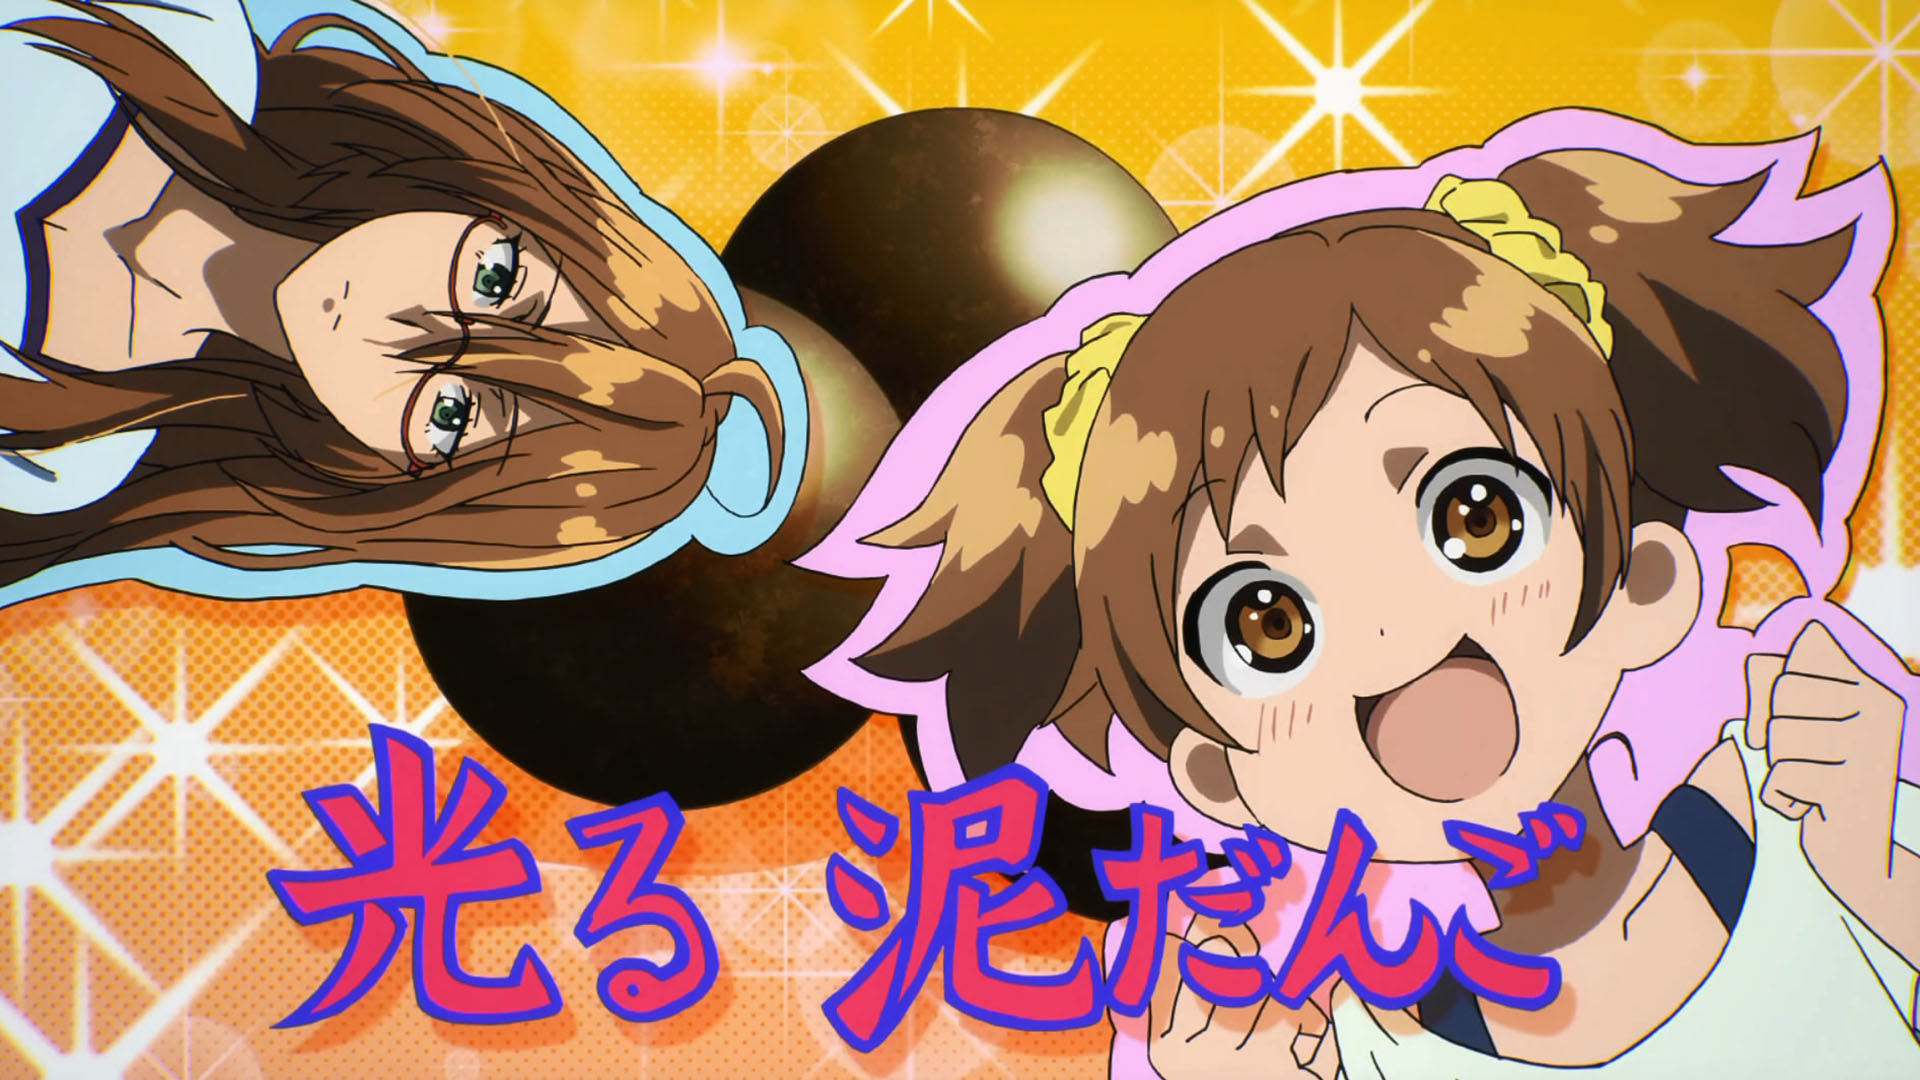 Bokura wa Minna Kawaisou Episode 1 (HS) 1080p